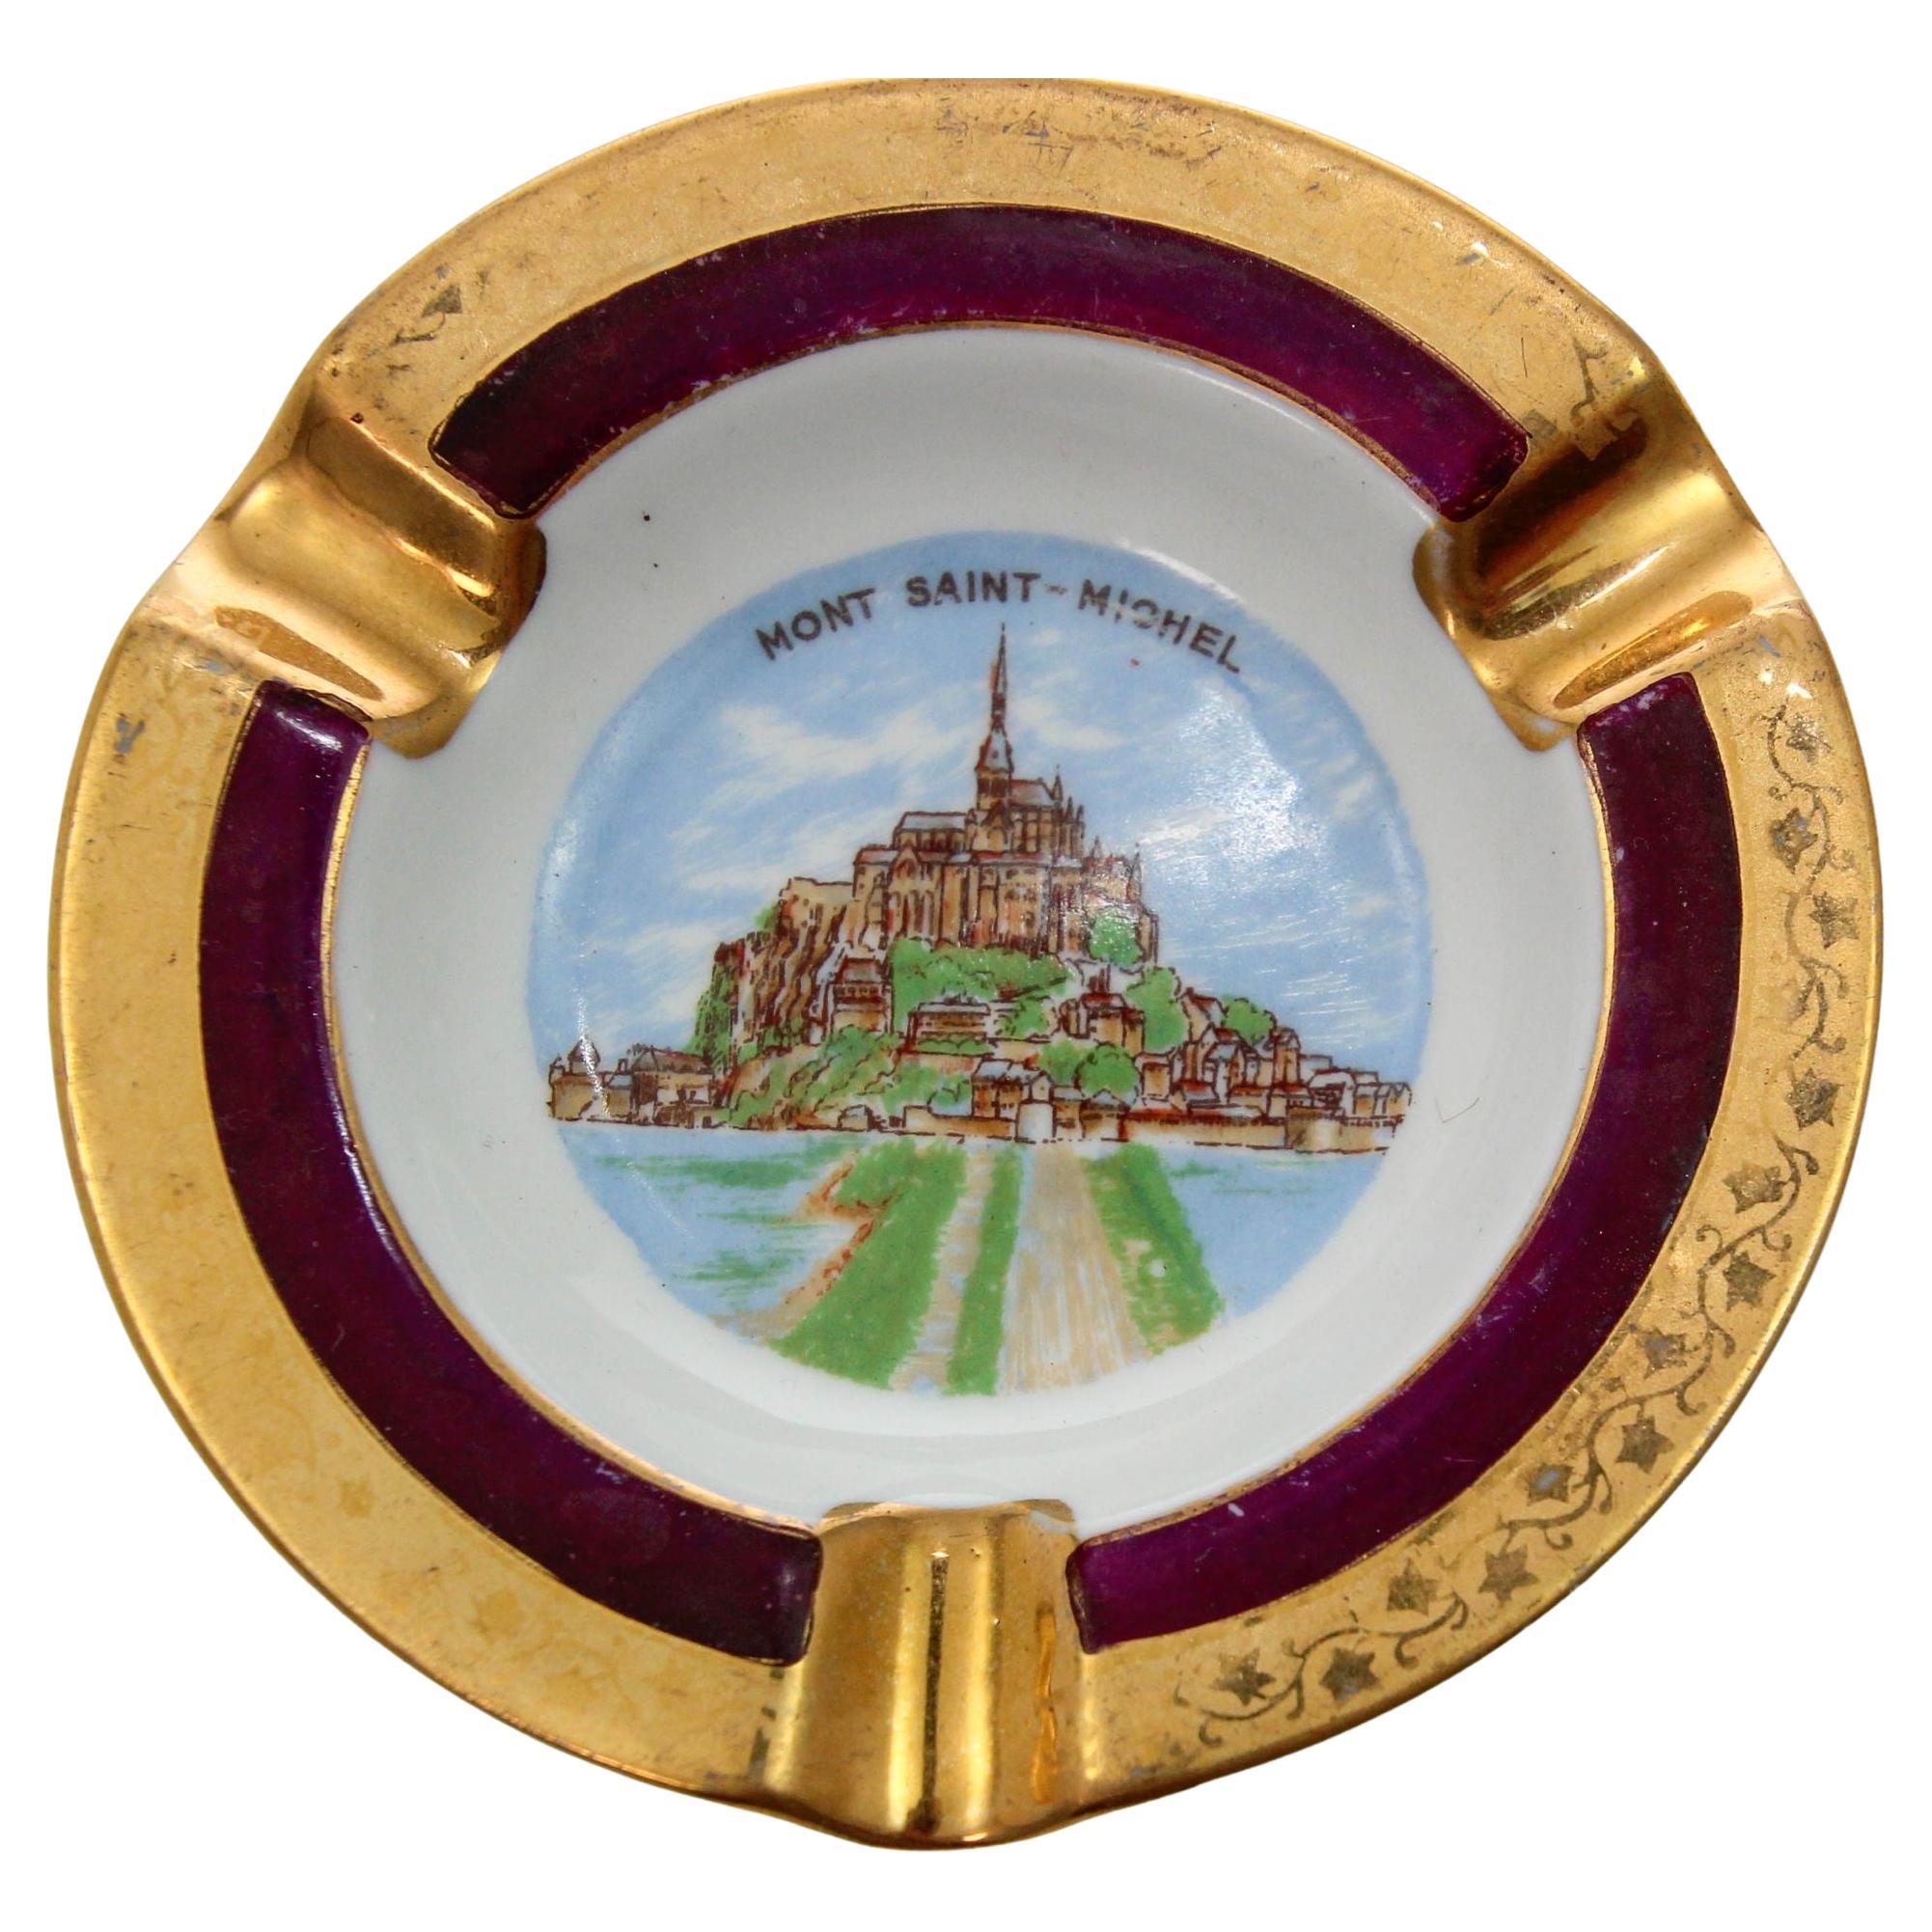 Limoges Porcelain Ashtray Mont Saint Michel Hand-Painted Dish France 1960s